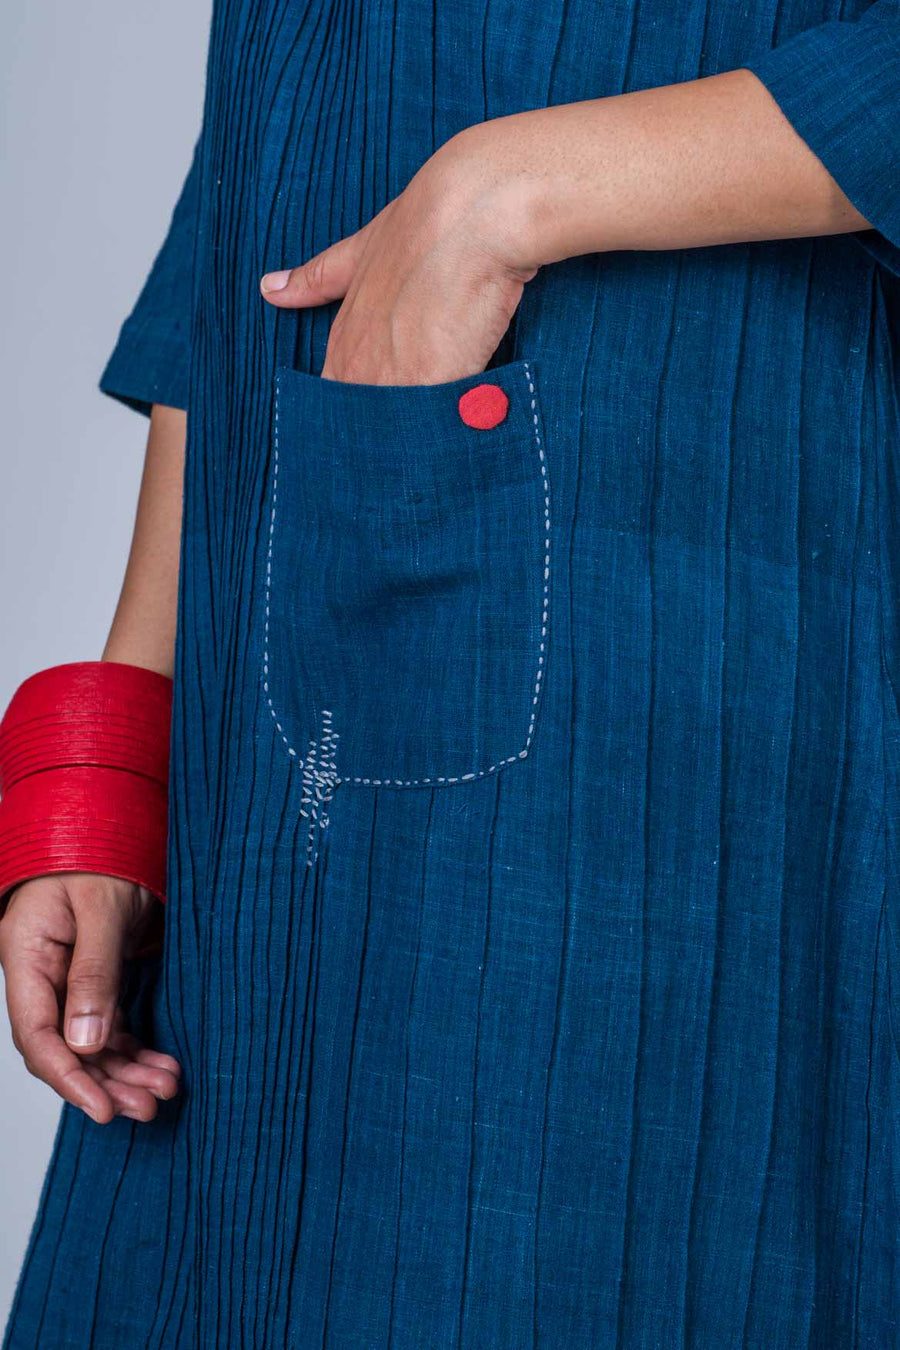 Natural Indigo Cotton pintuck dress - PARINA - Upasana Design Studio